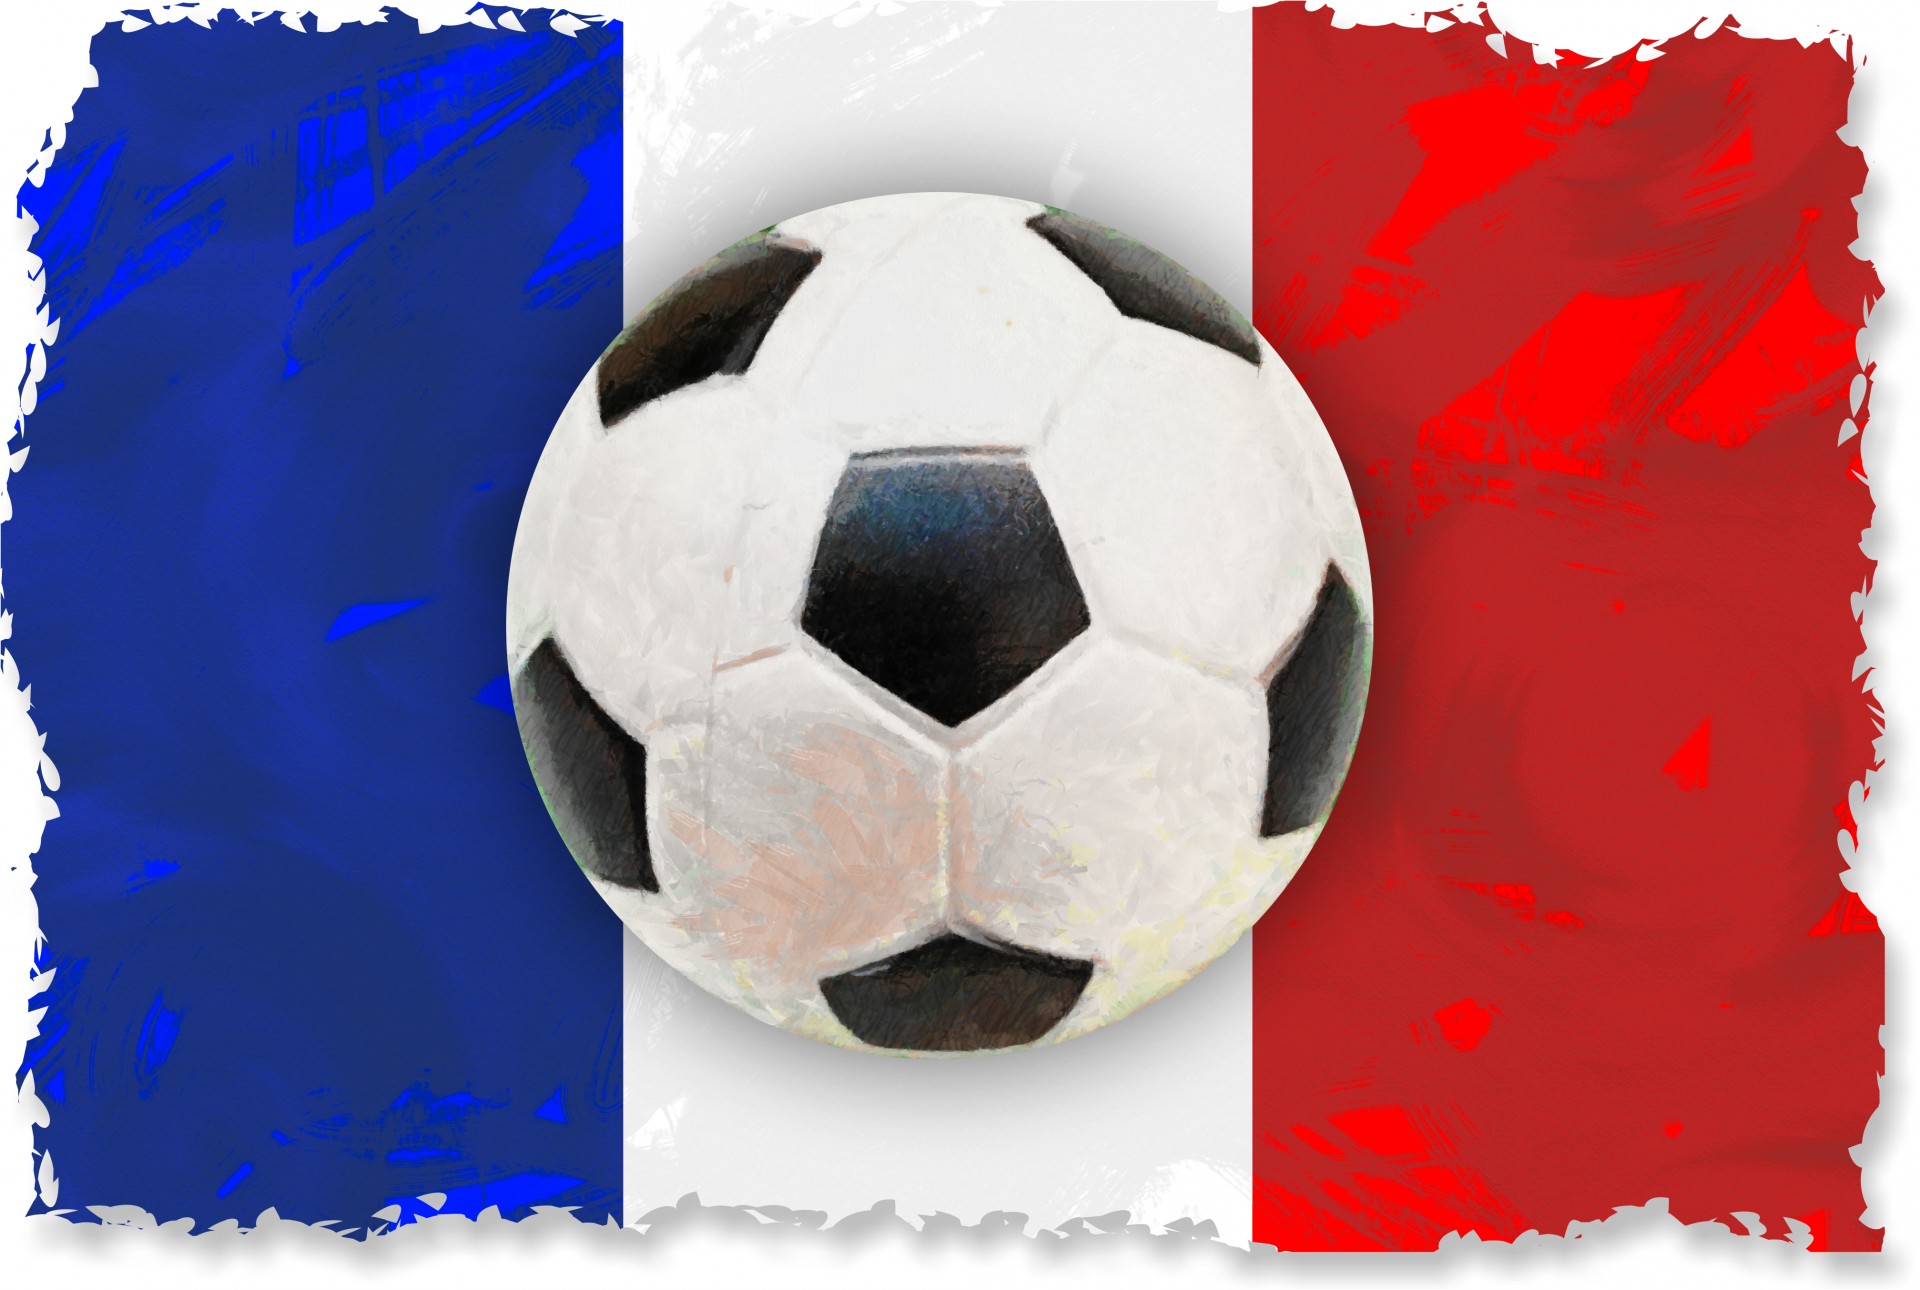 Le reportage de Canal + « Sport Reporter : Foot et rap, nées sous la même étoile » décrypte les relations étroites entre football et rap français